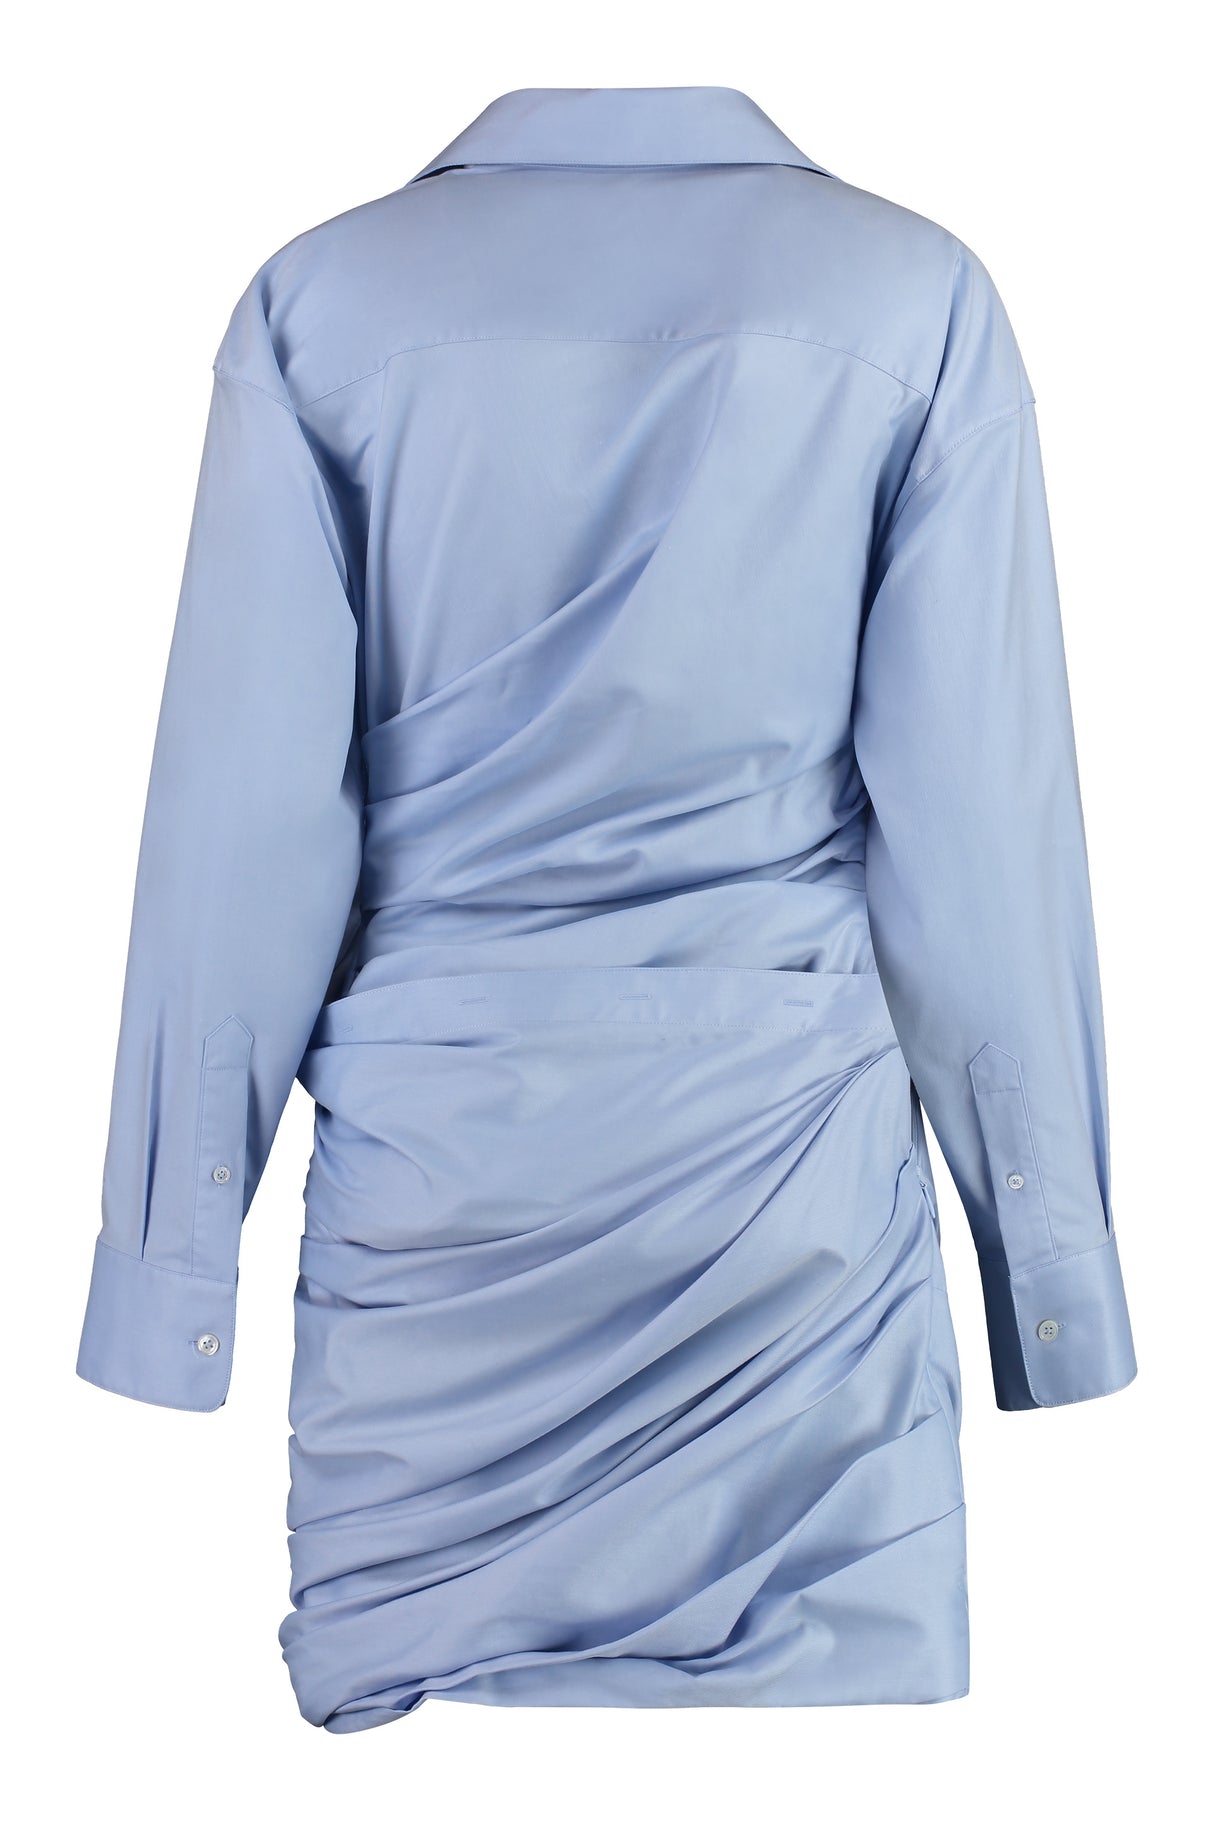 ALEXANDER WANG Light Blue Cotton Mini-Dress for Women